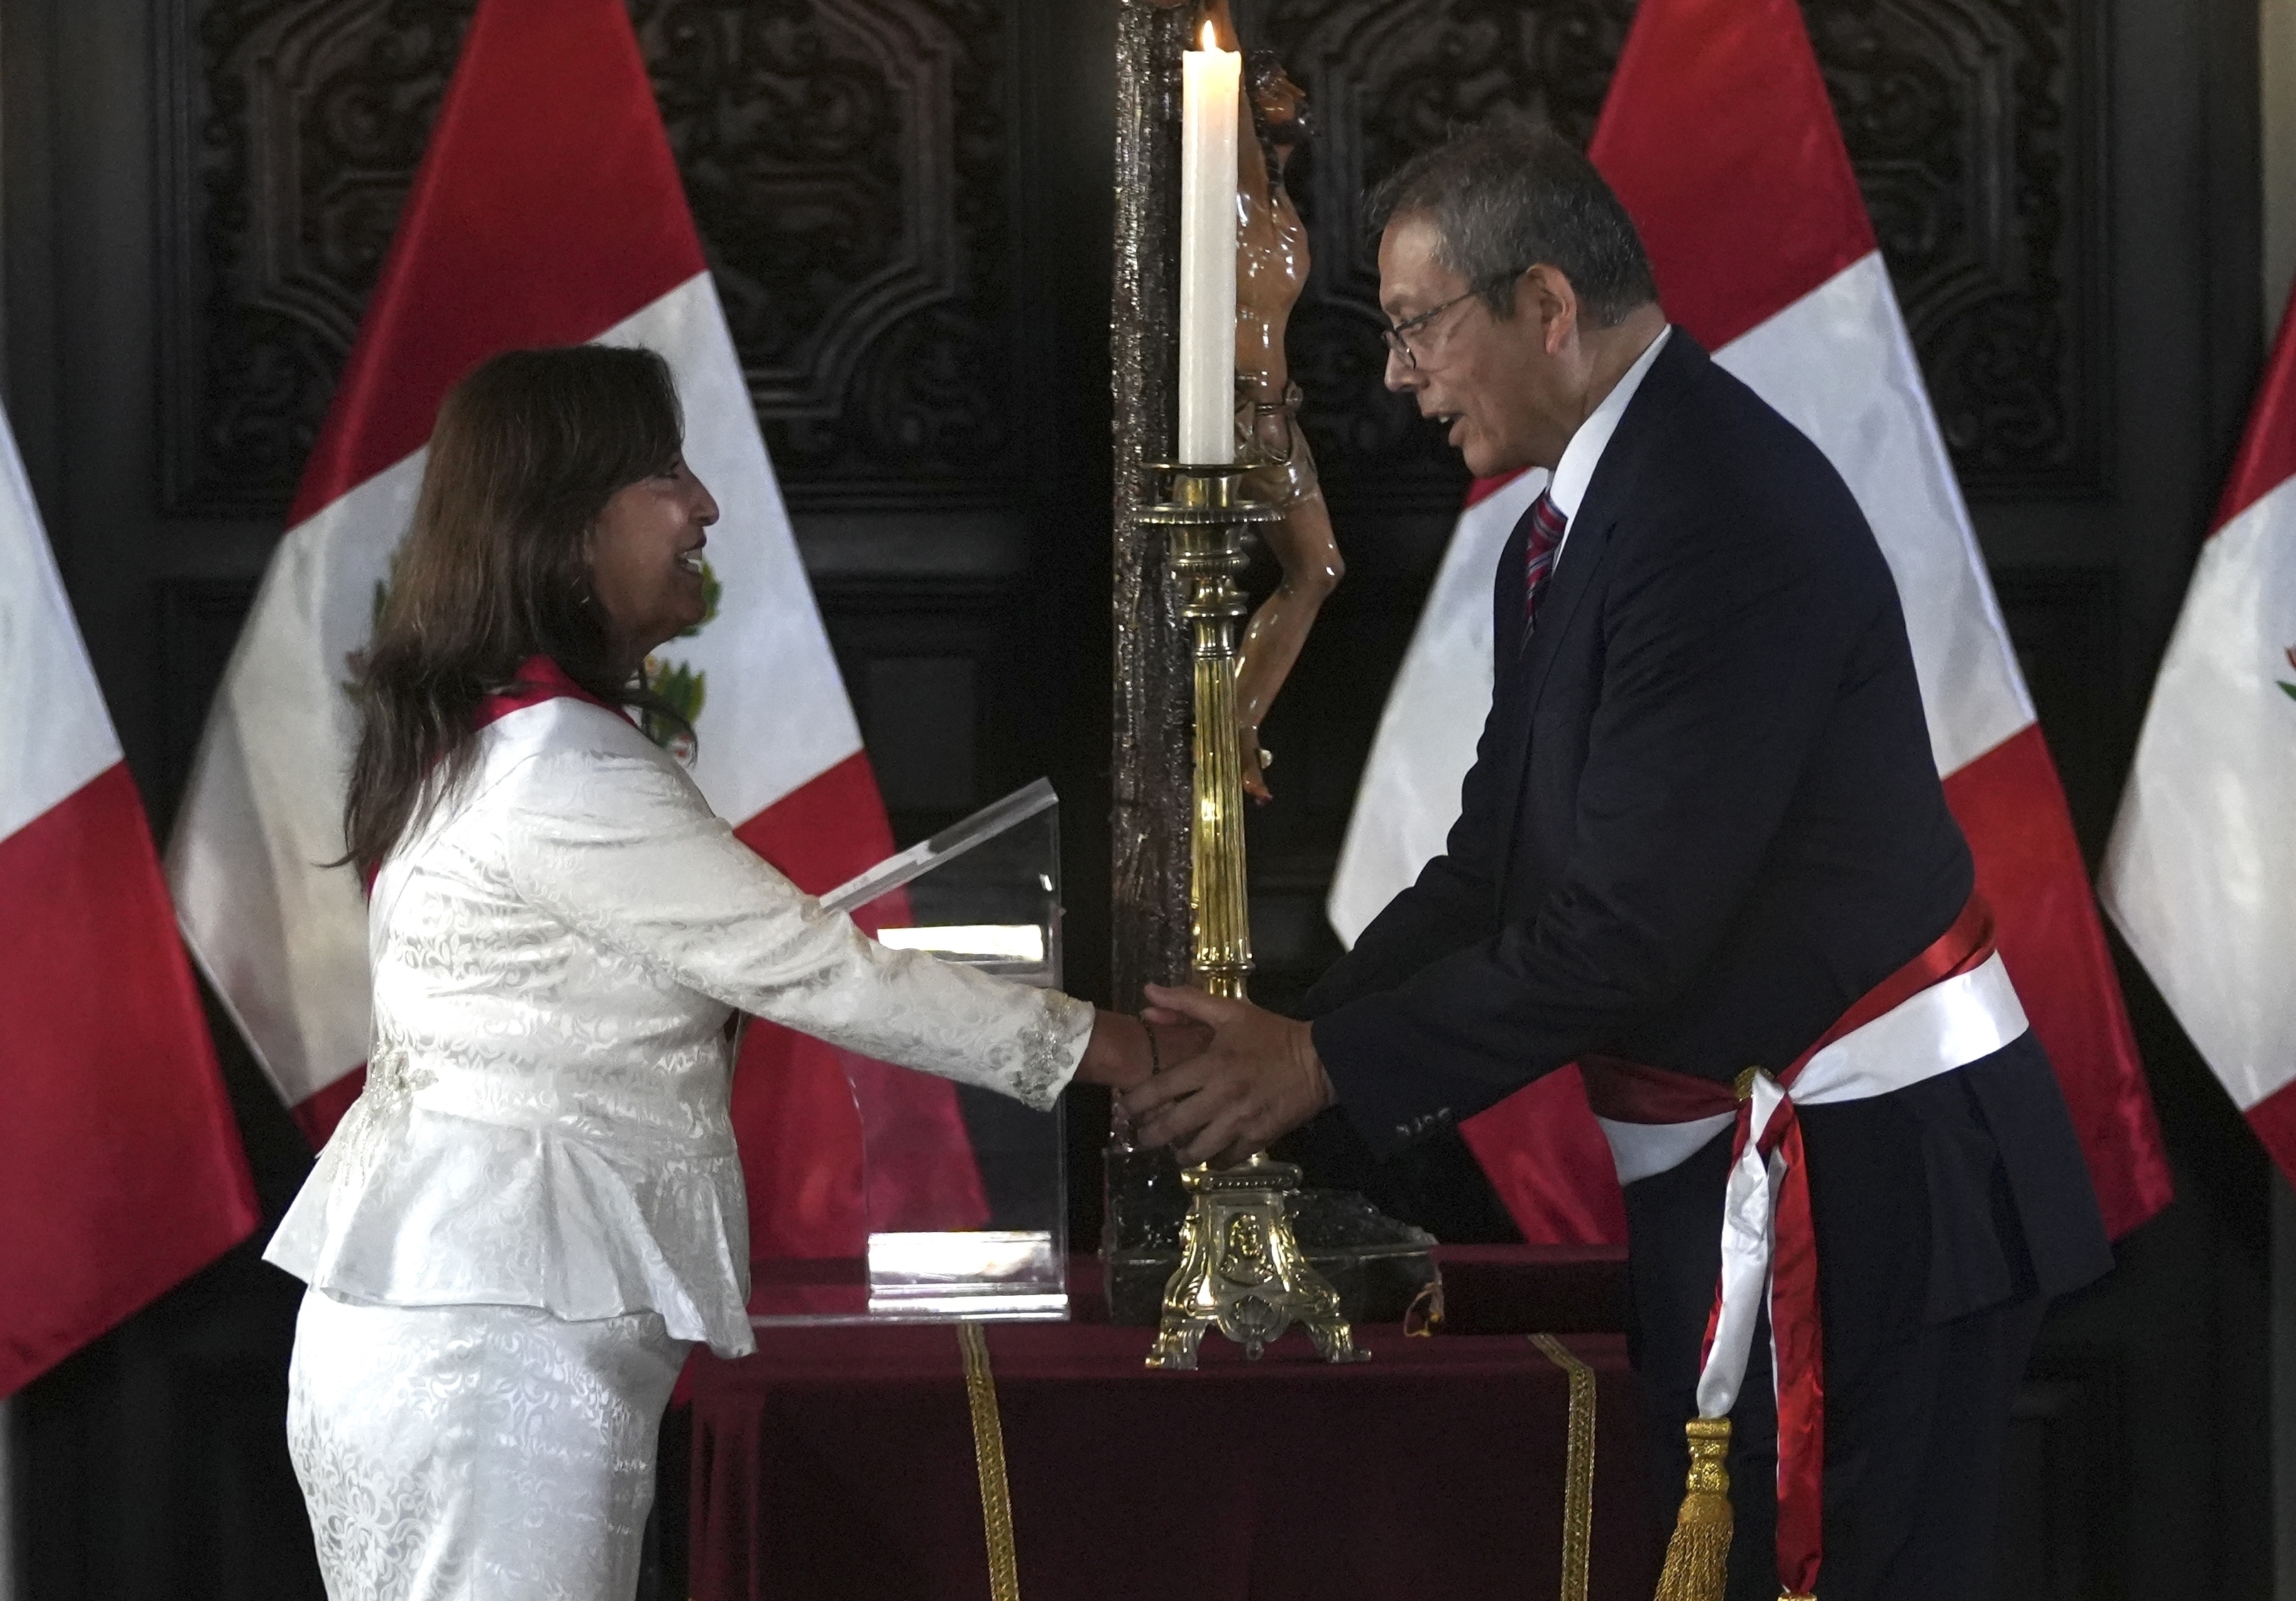 La presidenta de Perú Dina Boluarte estrecha la mano de su jefe de gabinete Pedro Angulo durante una ceremonia de juramentación para sus ministros en el palacio de gobierno de Lima, Perú, el sábado 10 de diciembre de 2022. (AP Foto/Guadalupe Pardo)